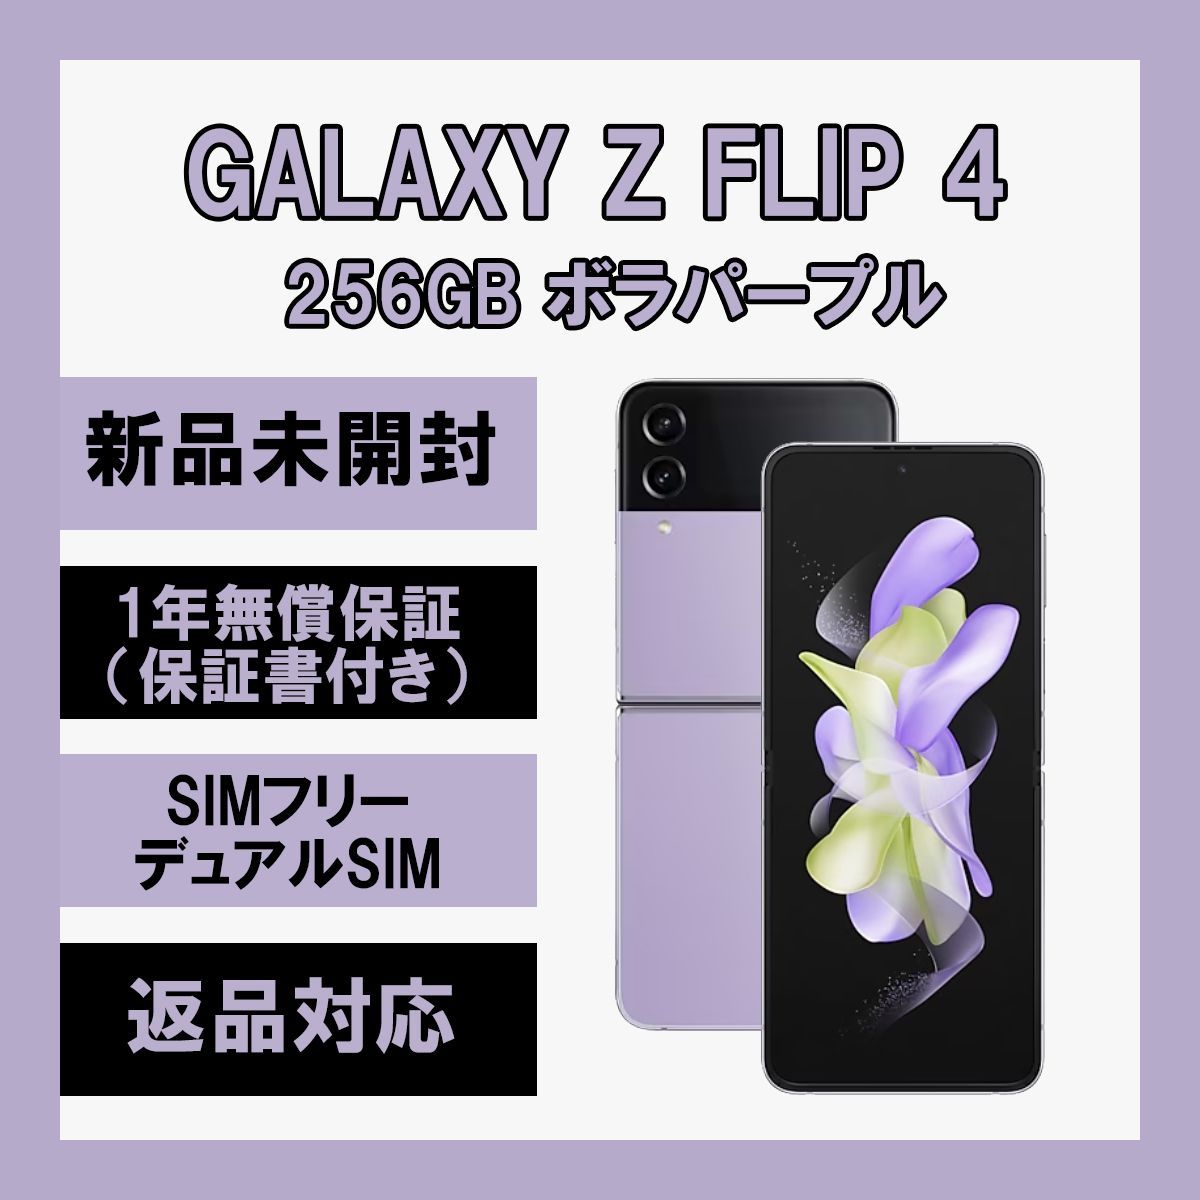 Galaxy Z Flip 5G 256GB ボラパープル SIMフリー